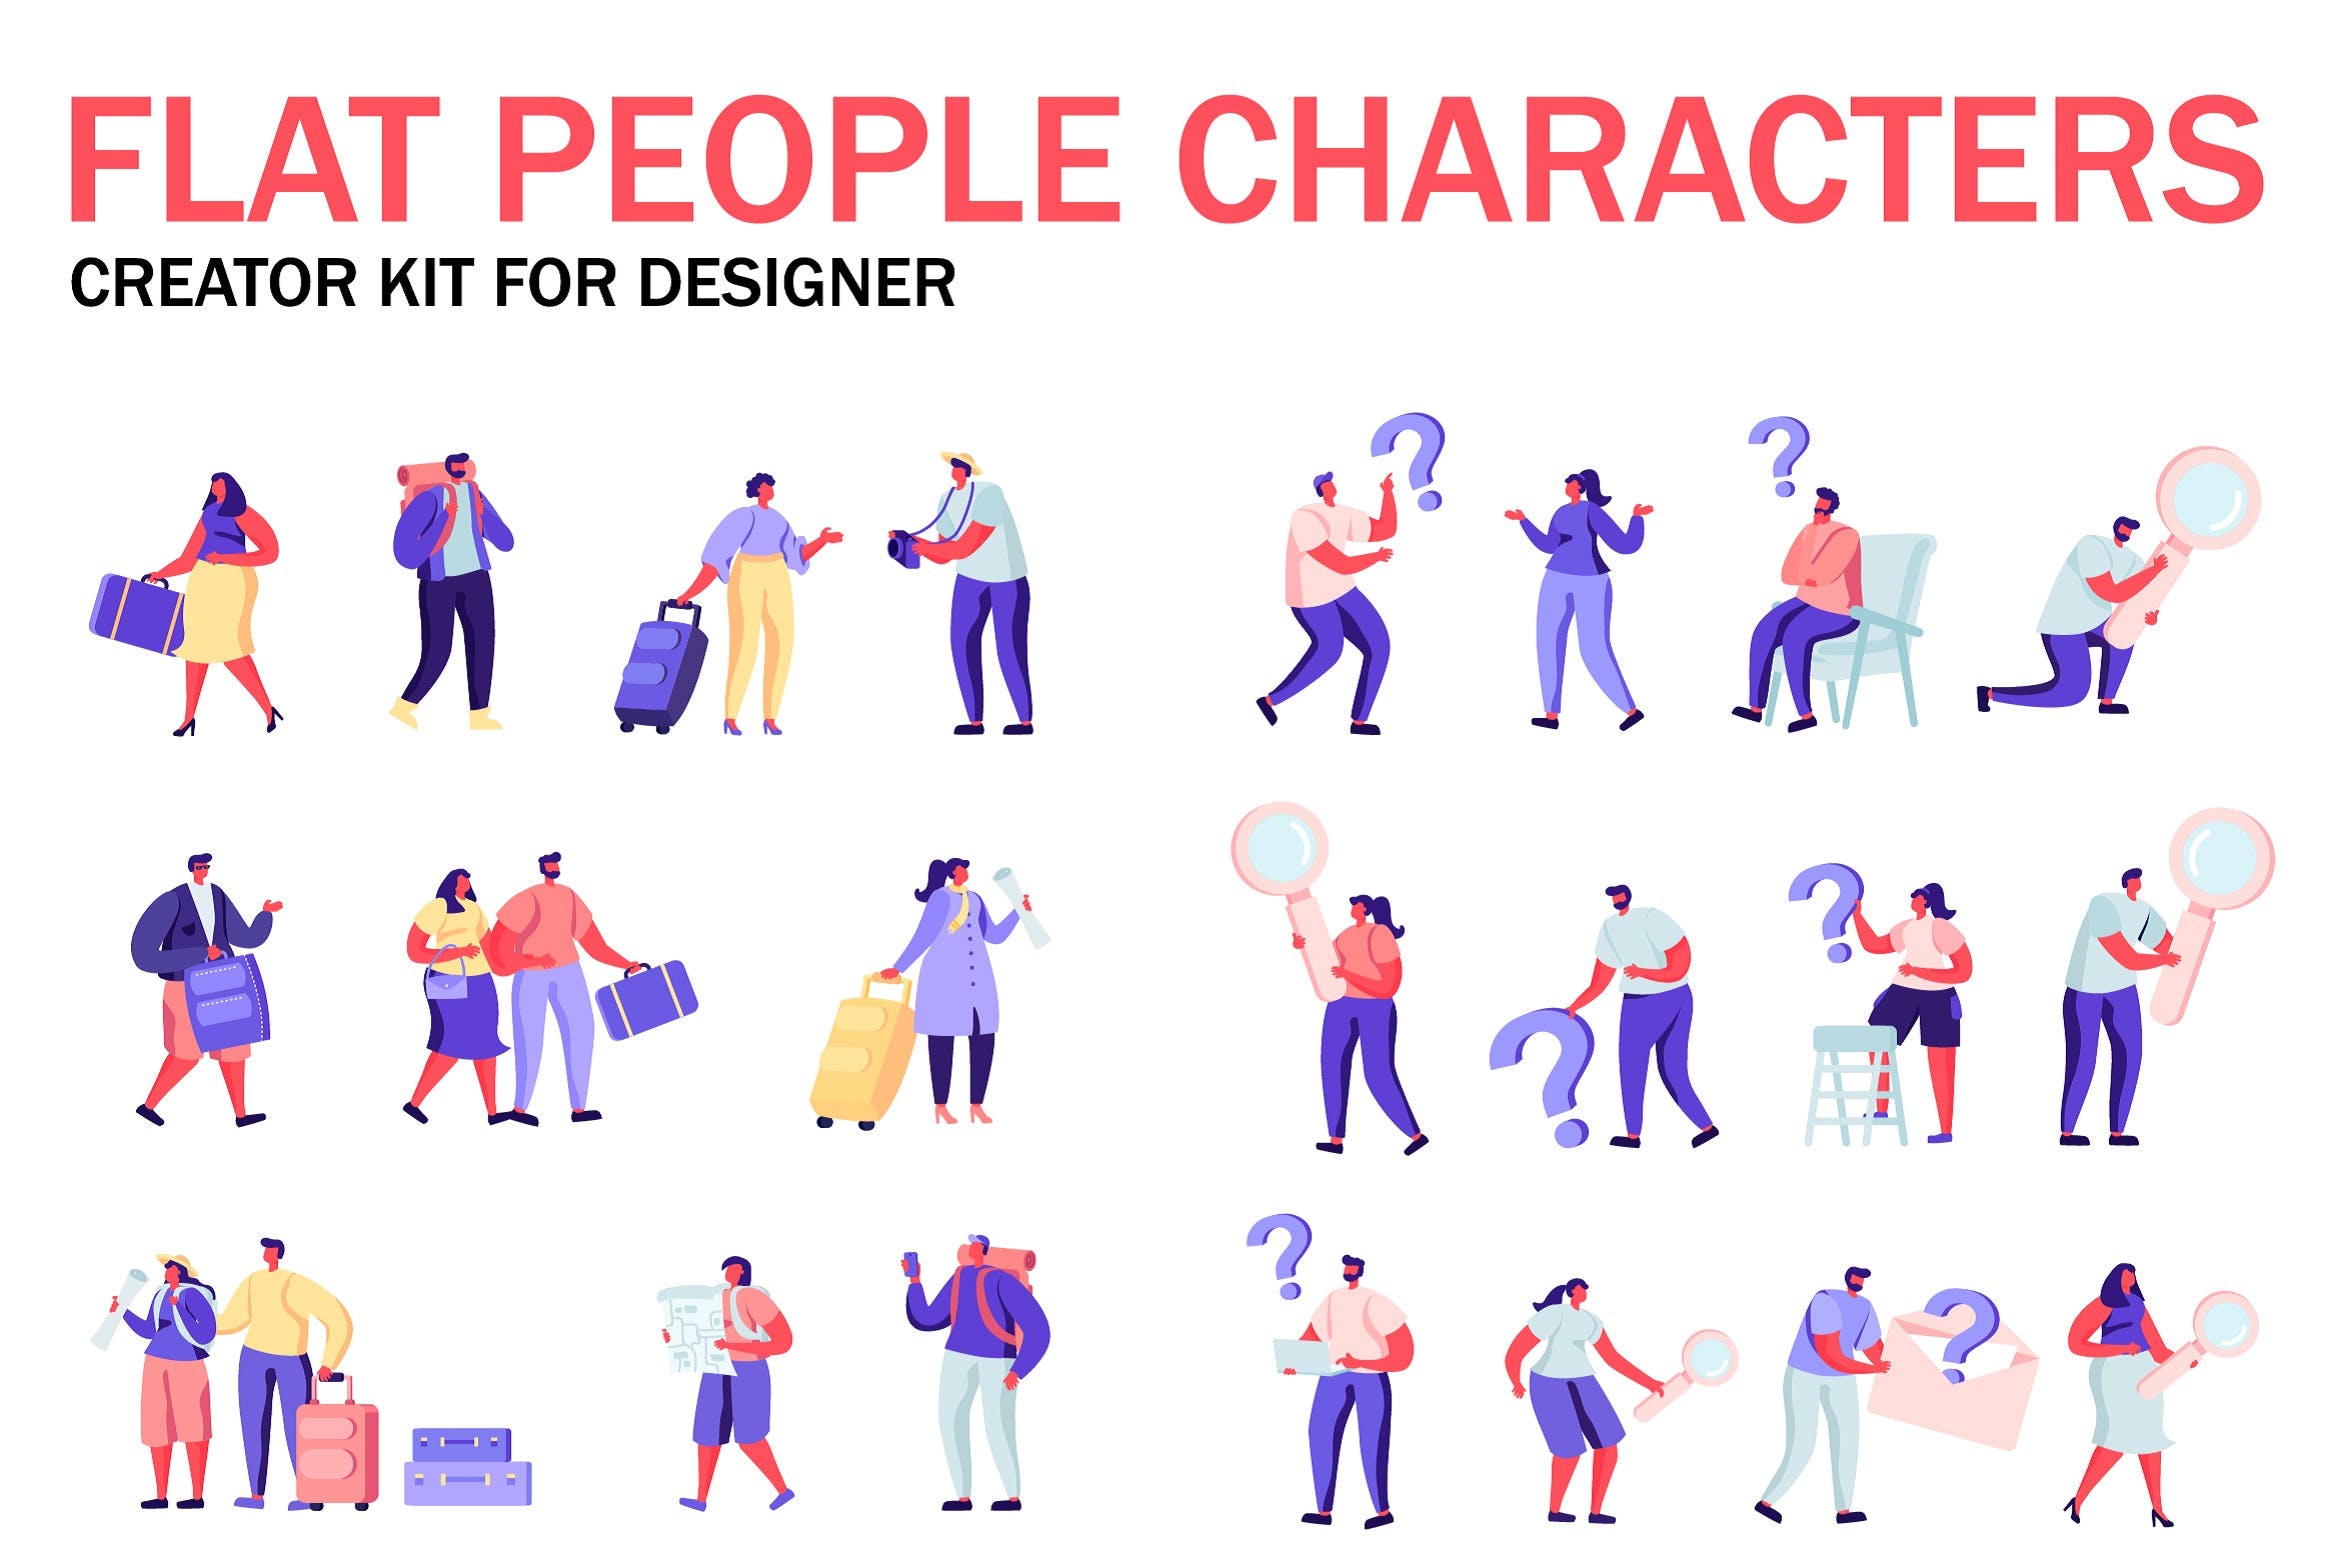 扁平化设计风格虚拟人物角色图形设计工具包v8 Flat People Character Creator Kit插图